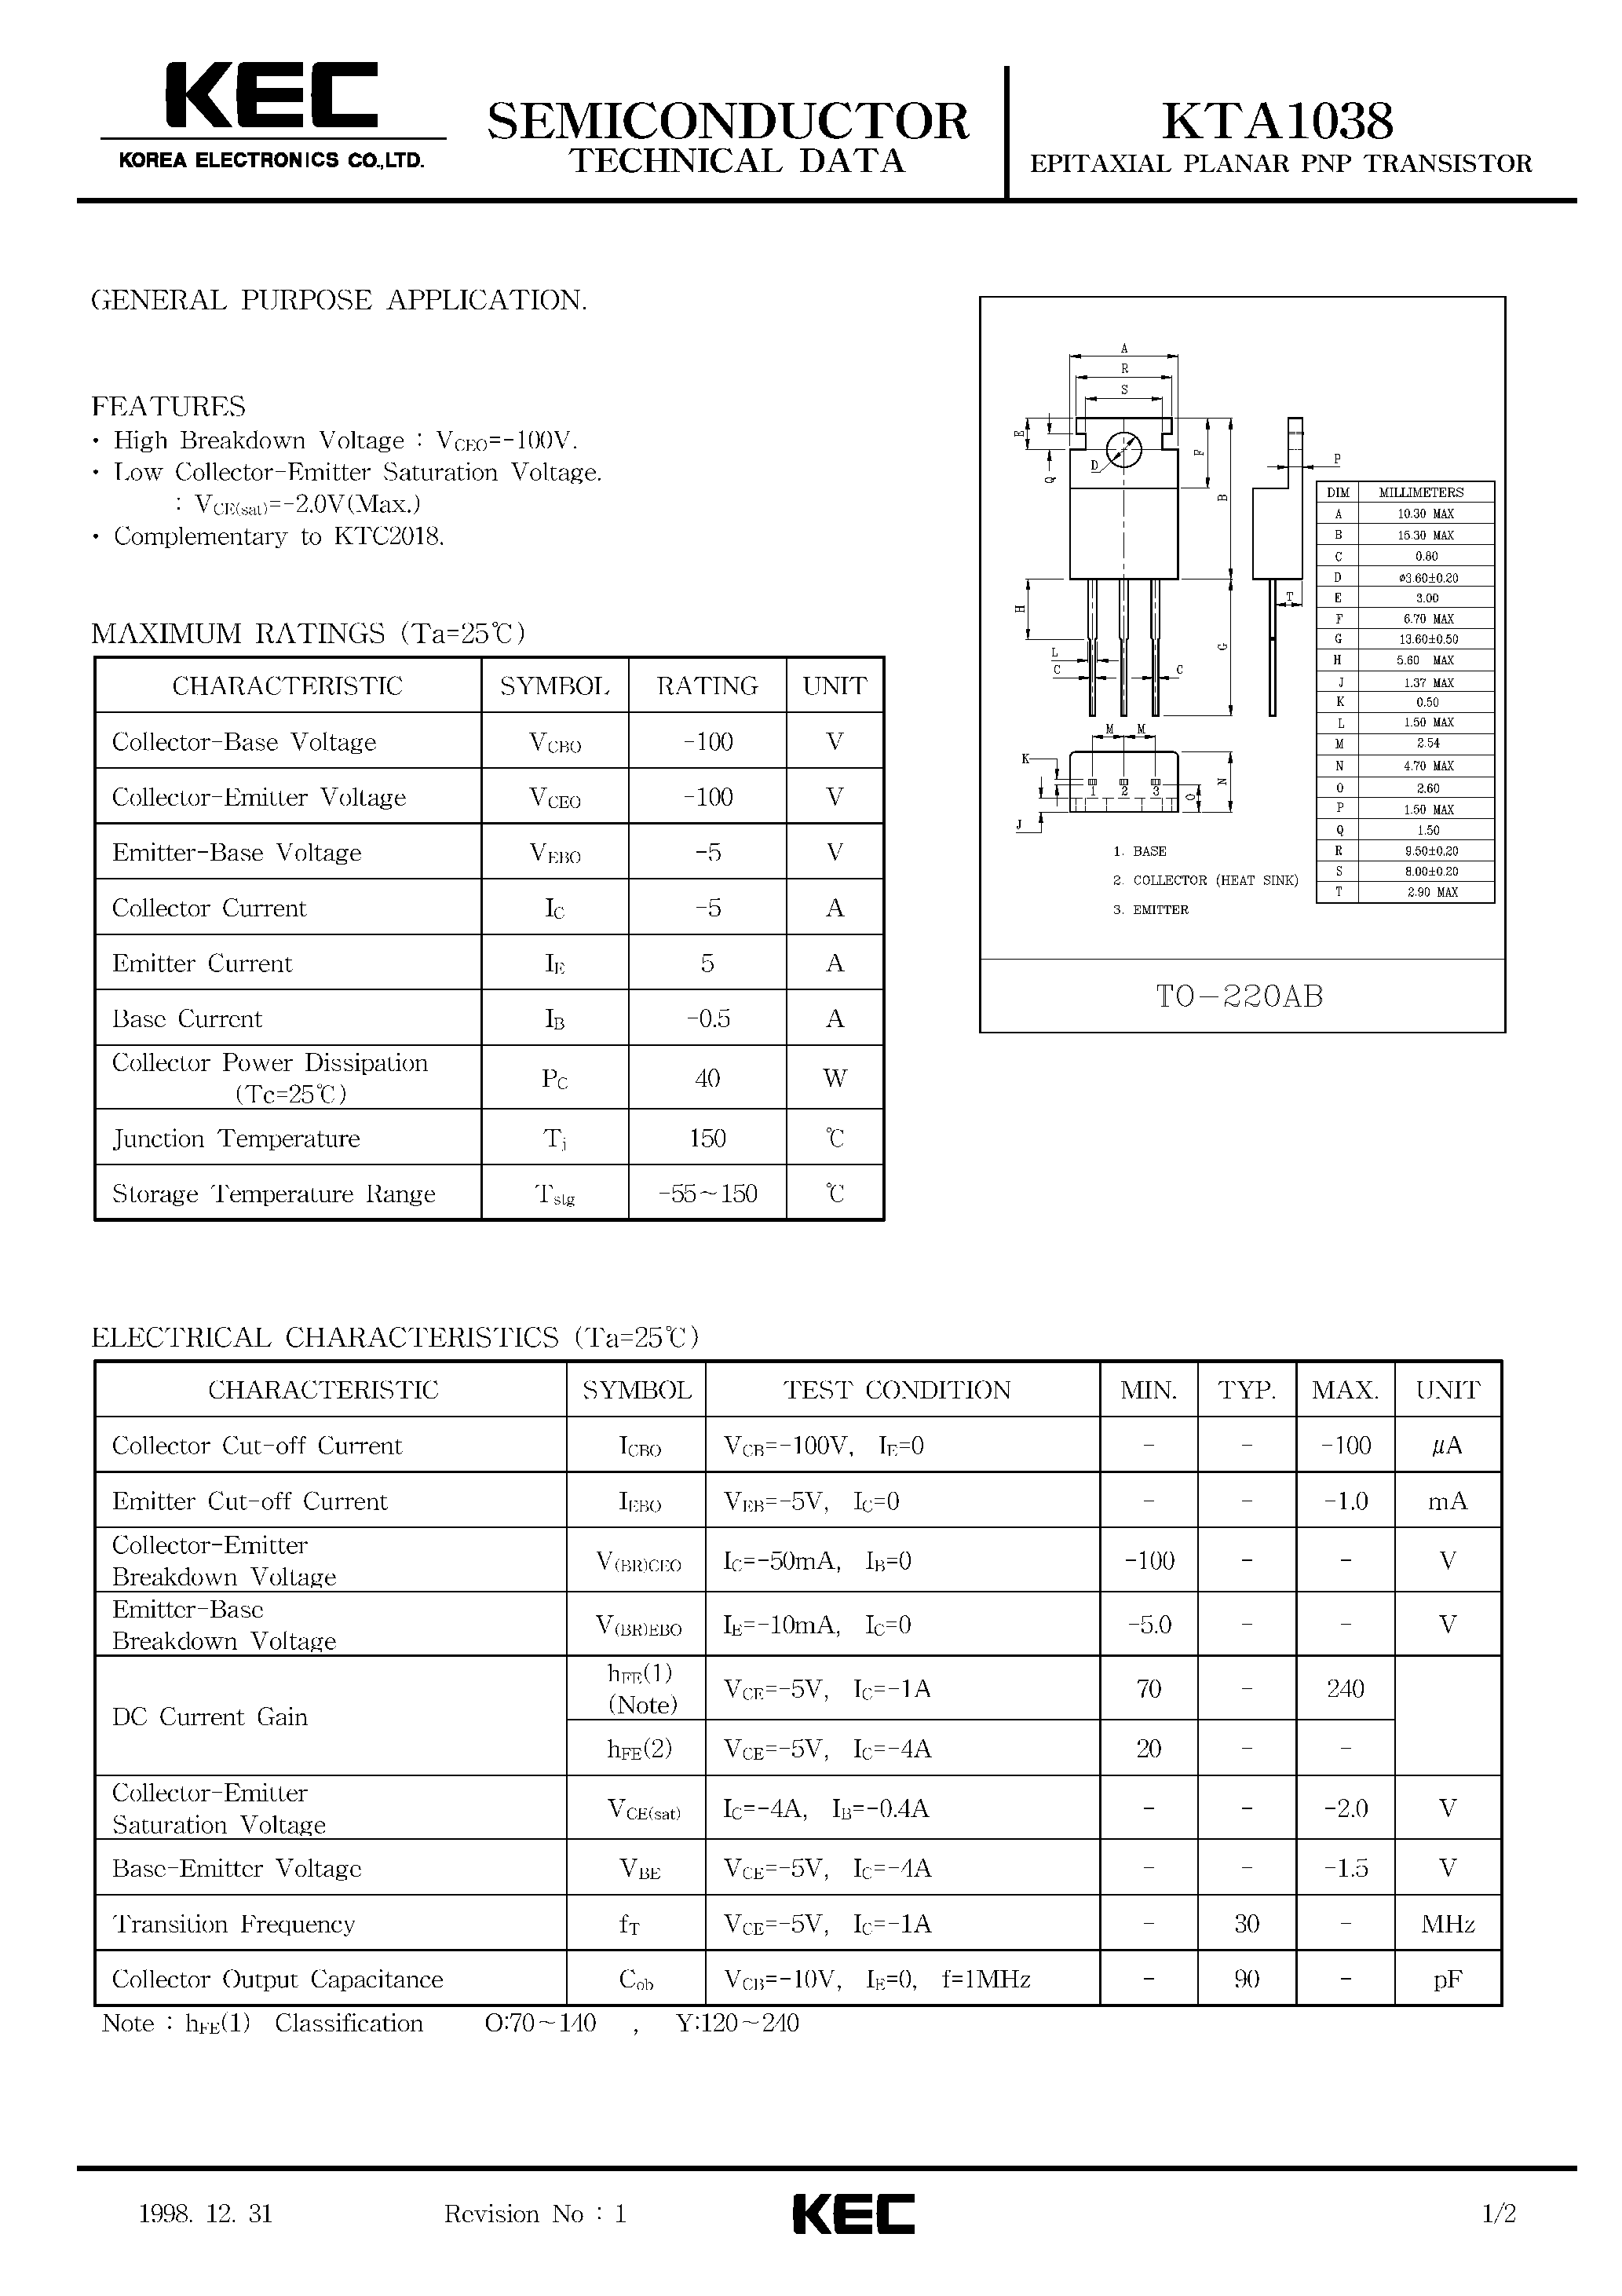 Datasheet KTA1038 - EPITAXIAL PLANAR PNP TRANSISTOR (GENERAL PURPOSE) page 1